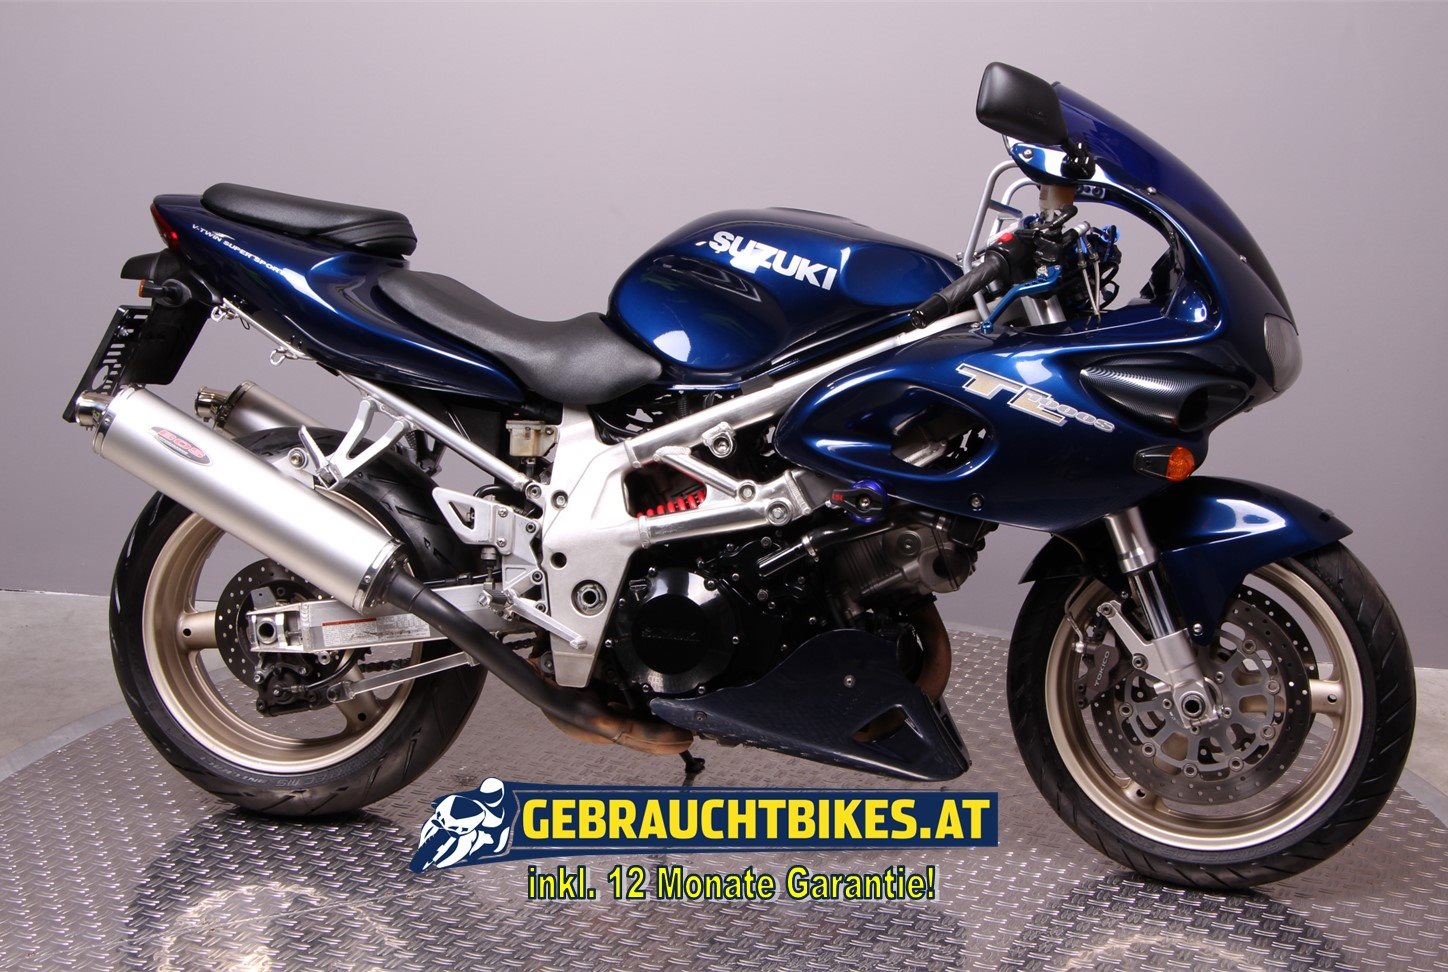 Suzuki TL 1000 S Motorrad, gebraucht